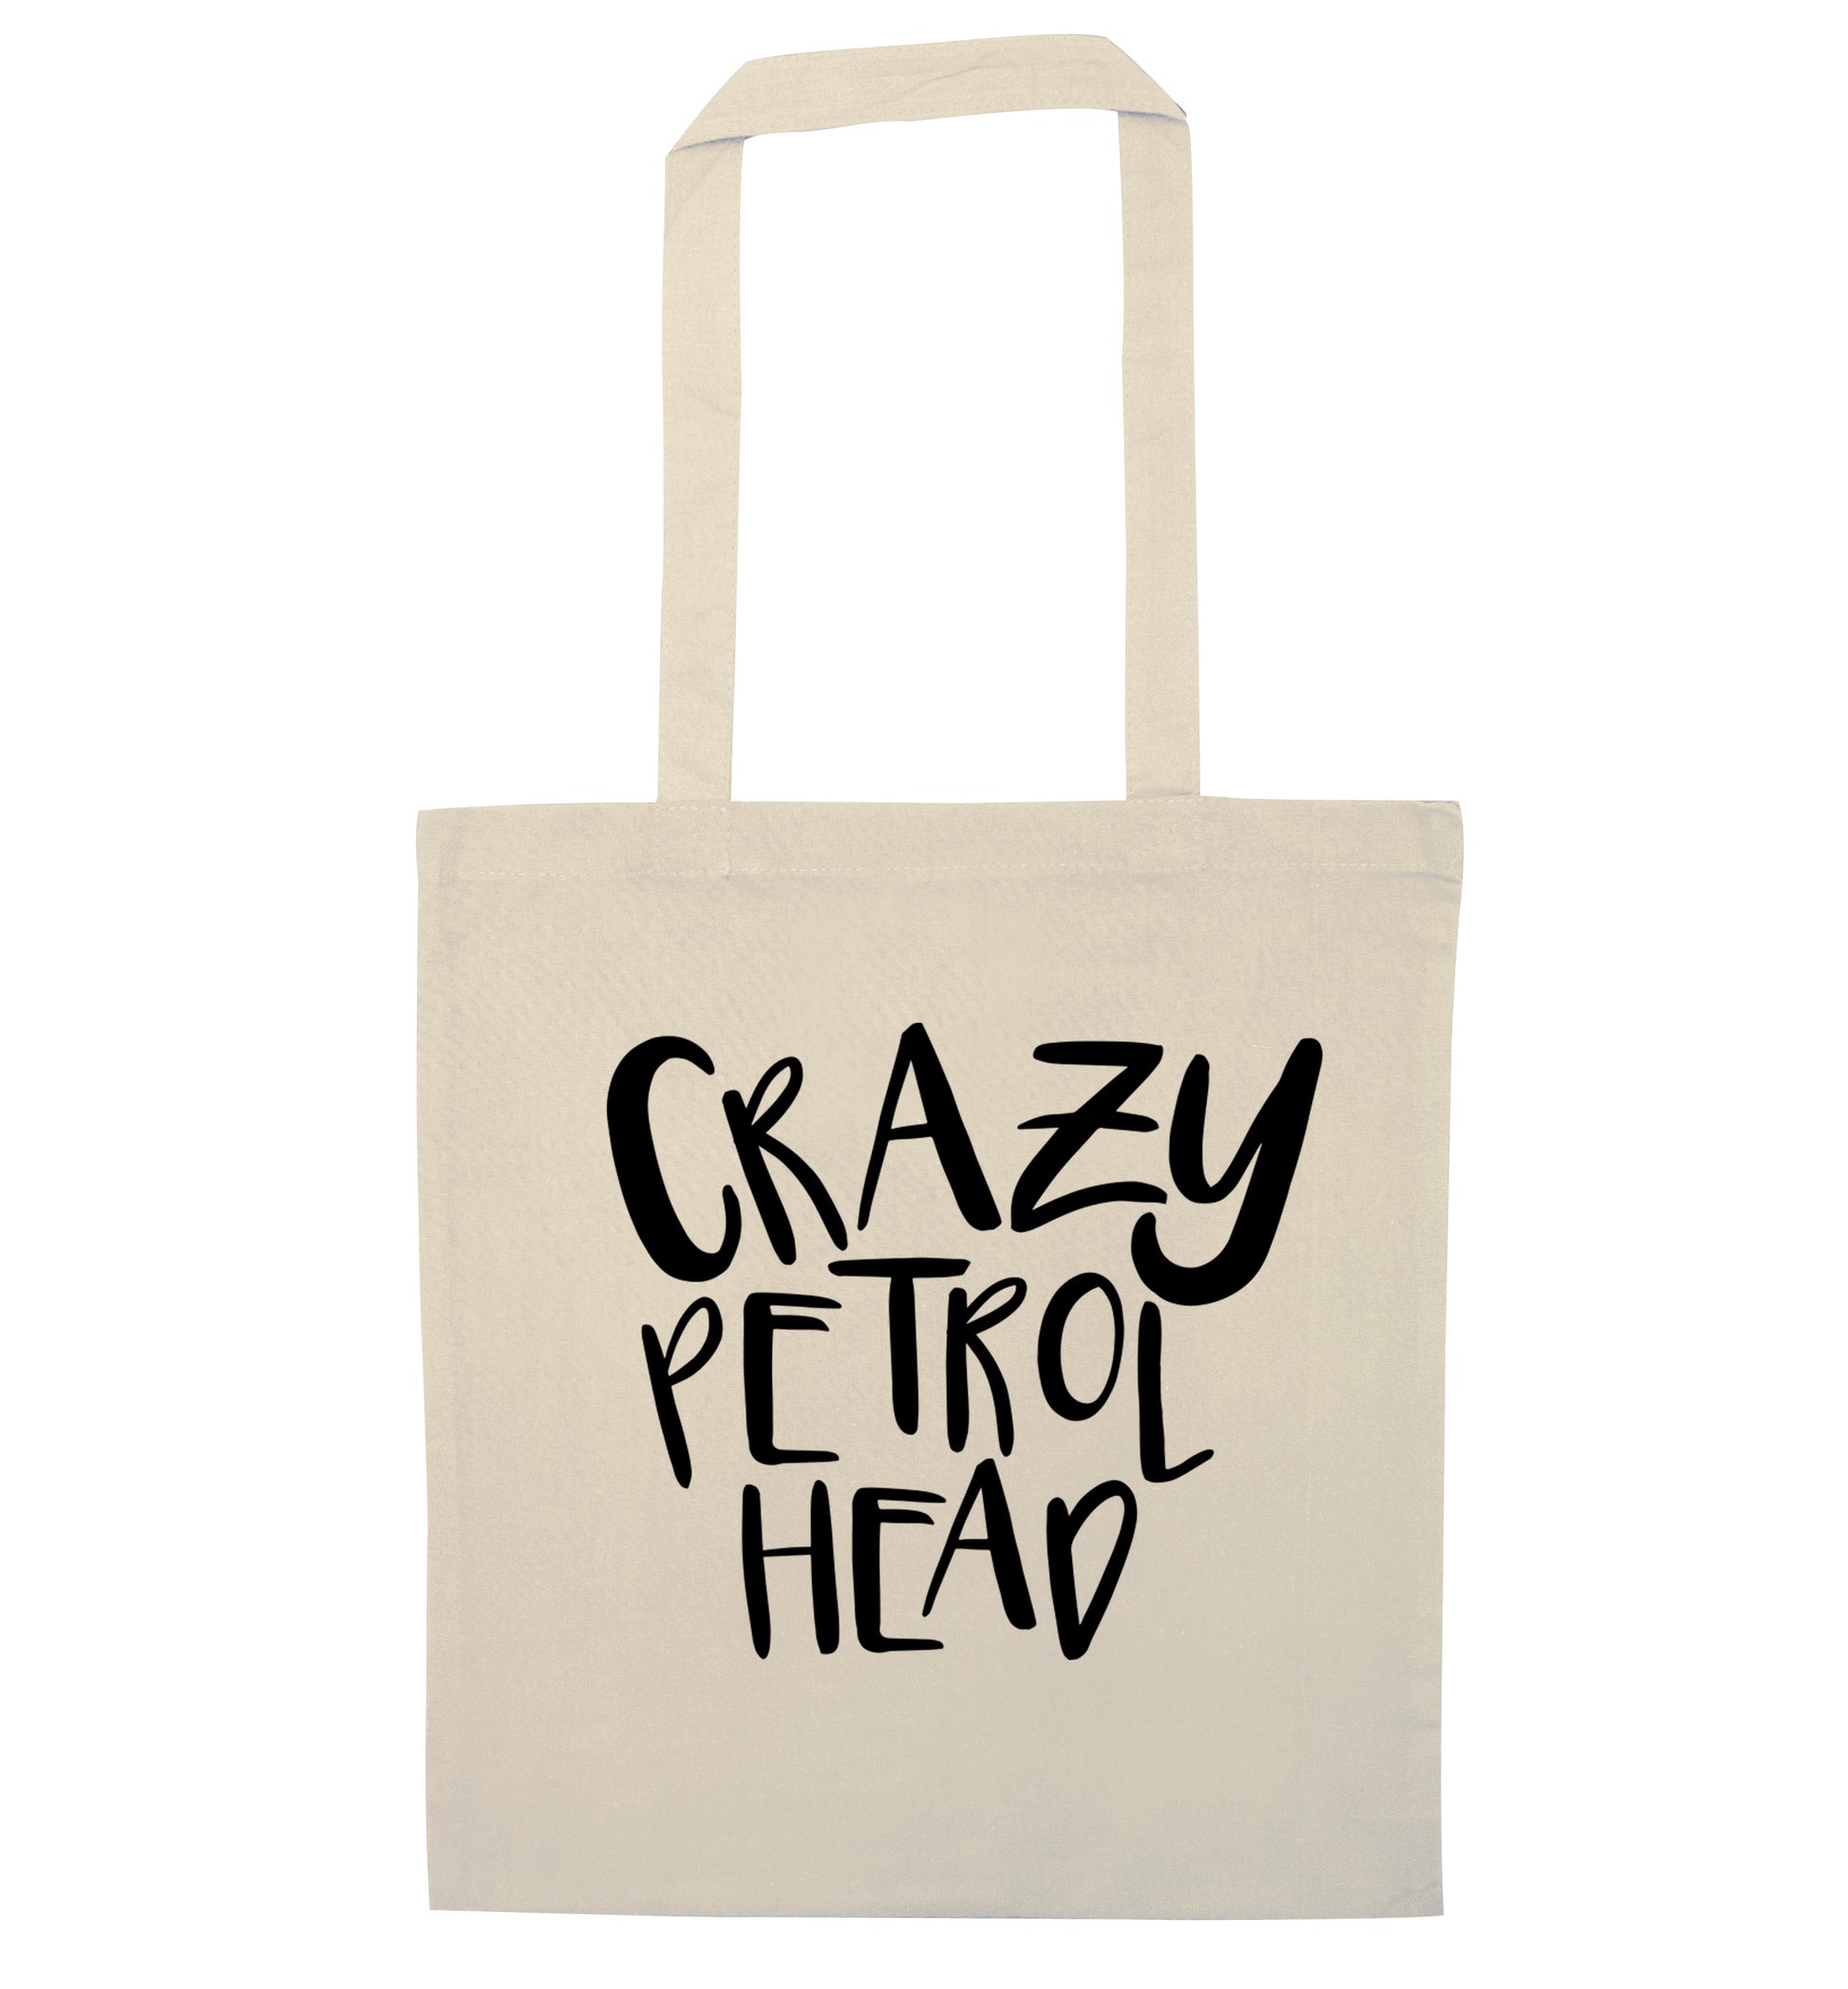 Crazy petrol head natural tote bag